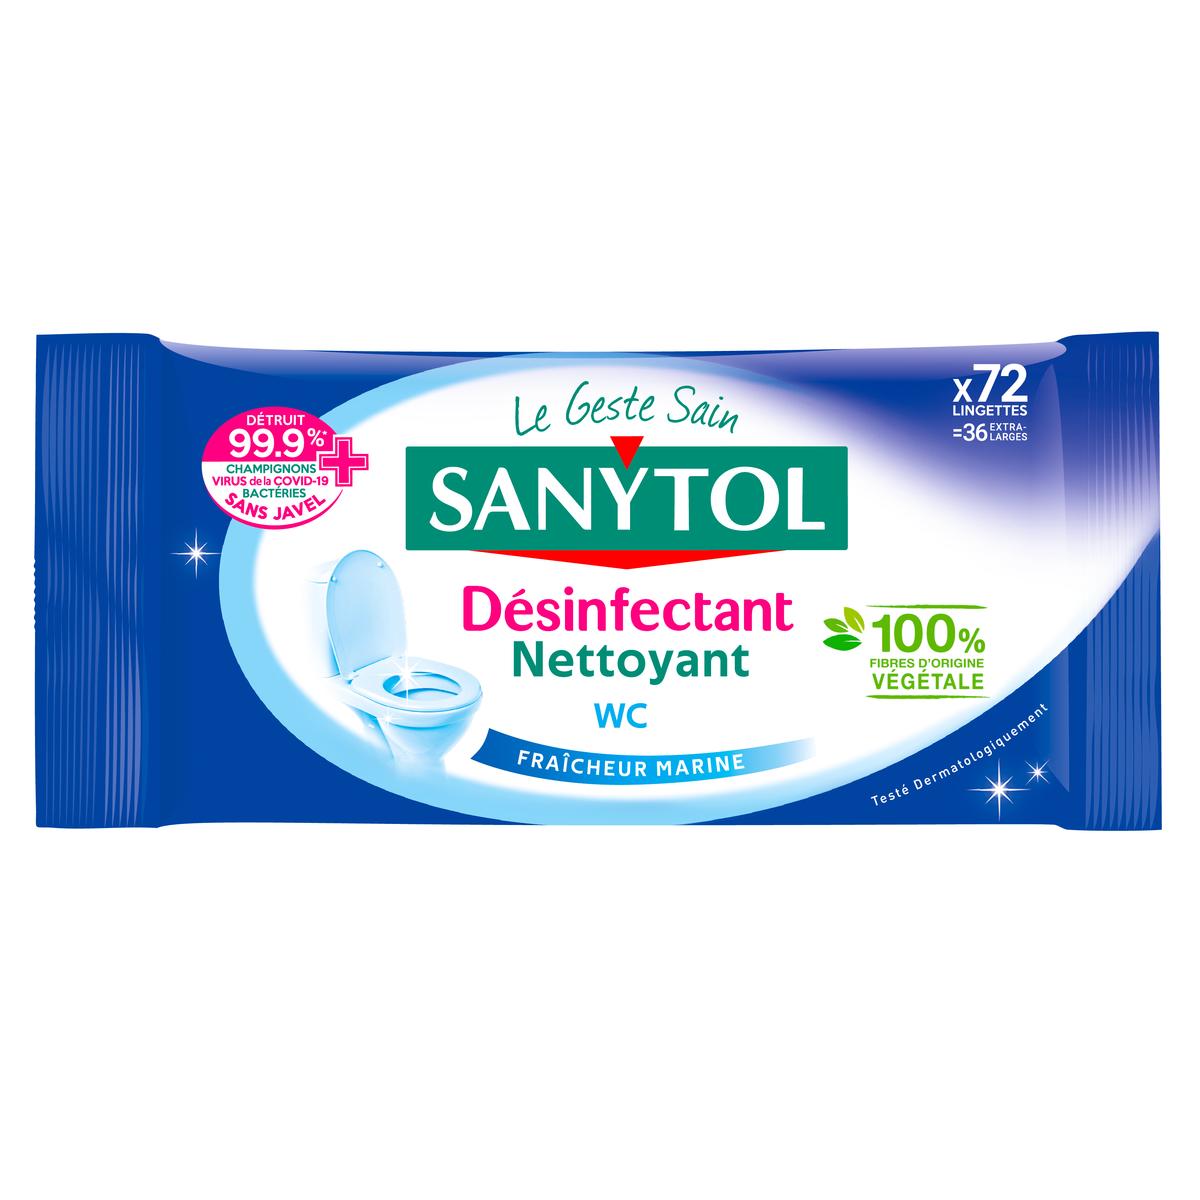 Achat / Vente Sanytol Lingettes désinfectantes WC marine, 60 lingettes